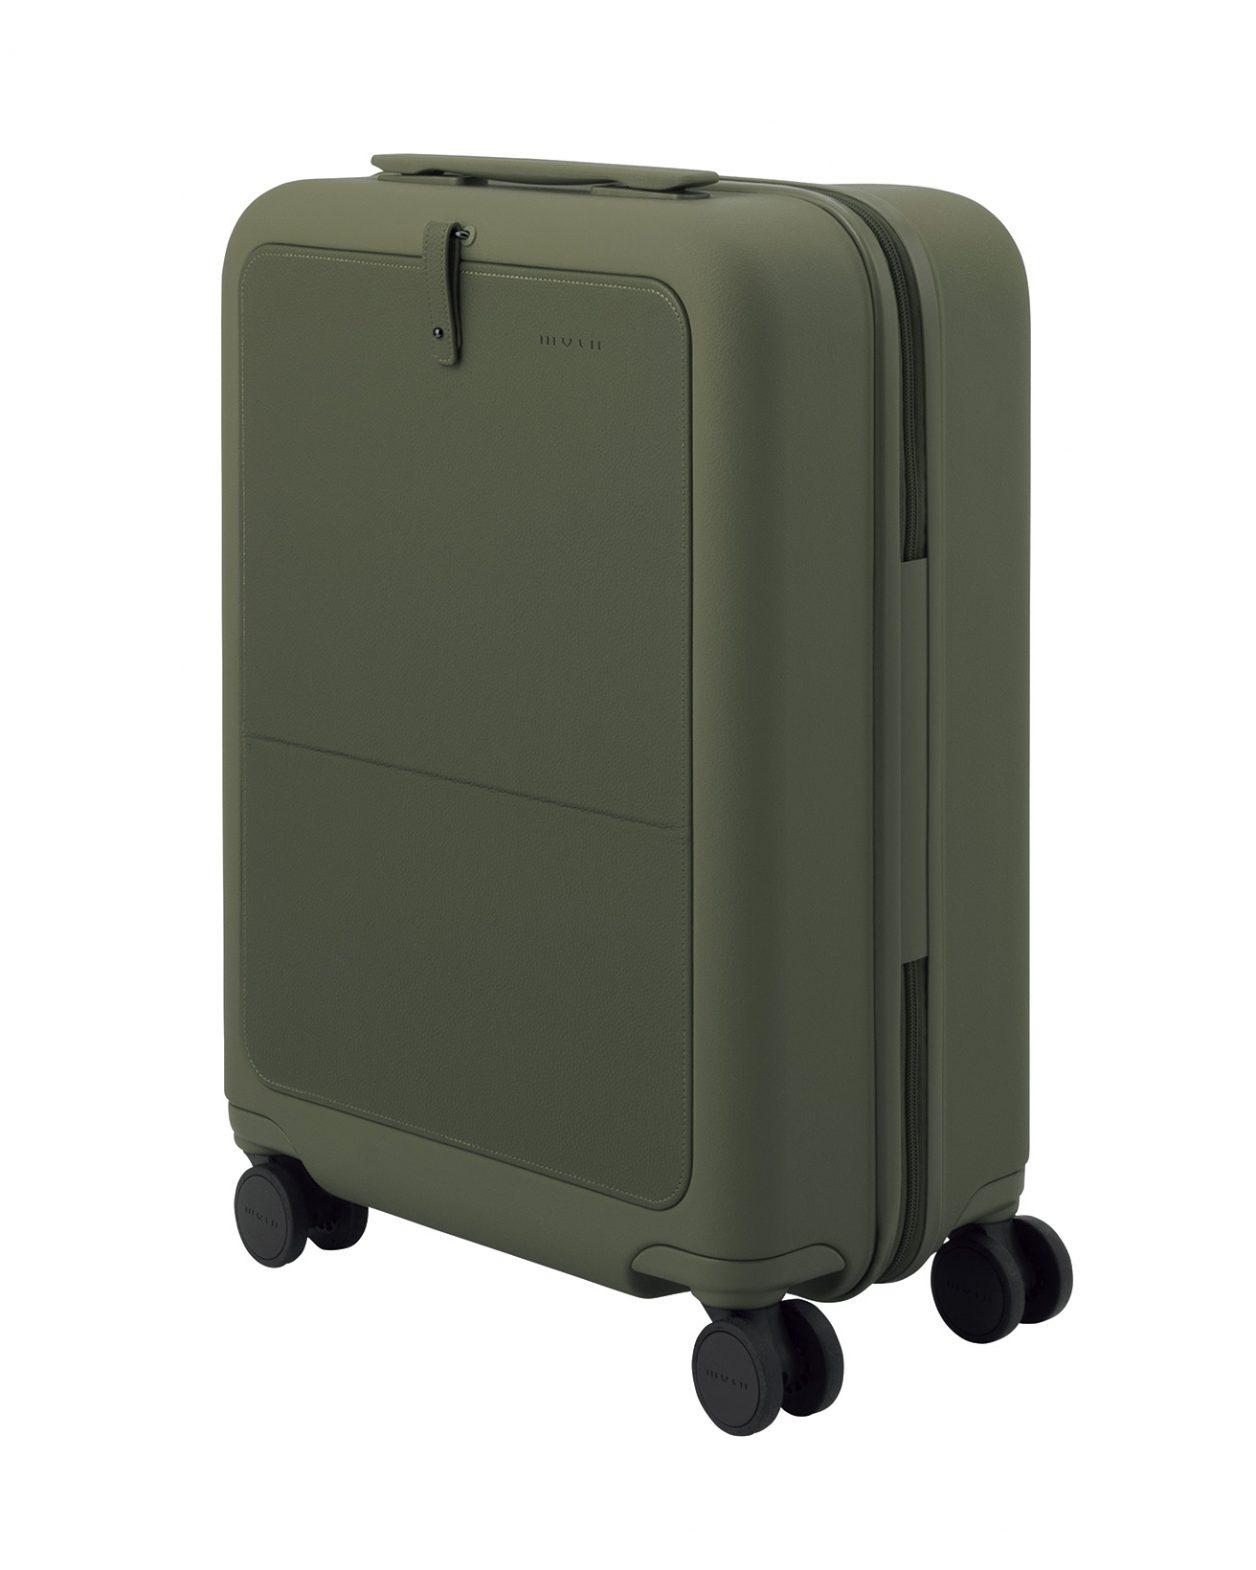 柴田文江がデザインするスーツケース〈モルン〉に新色「モス」が追加。